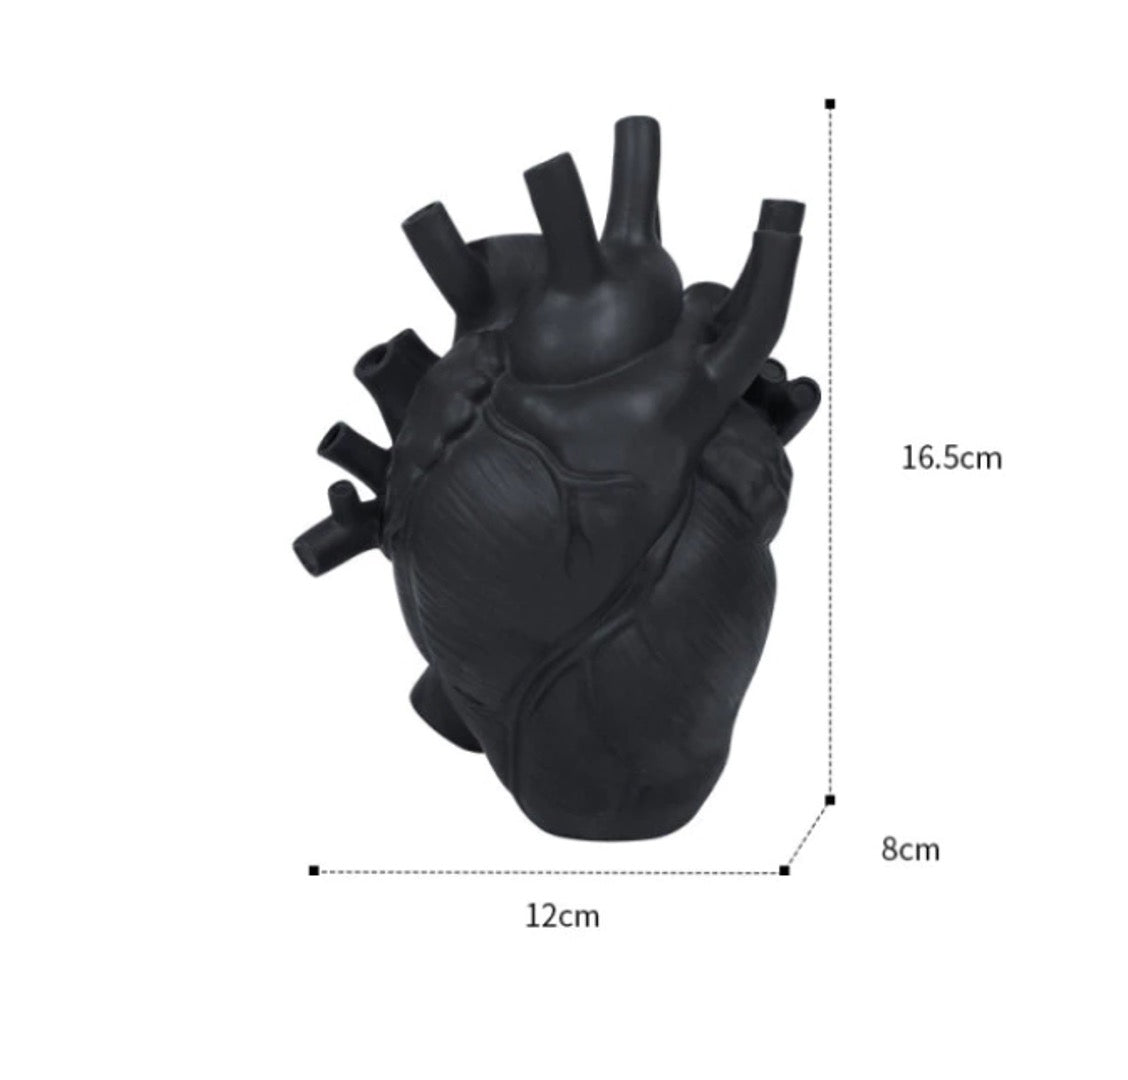 Anatomical heart vase in black.